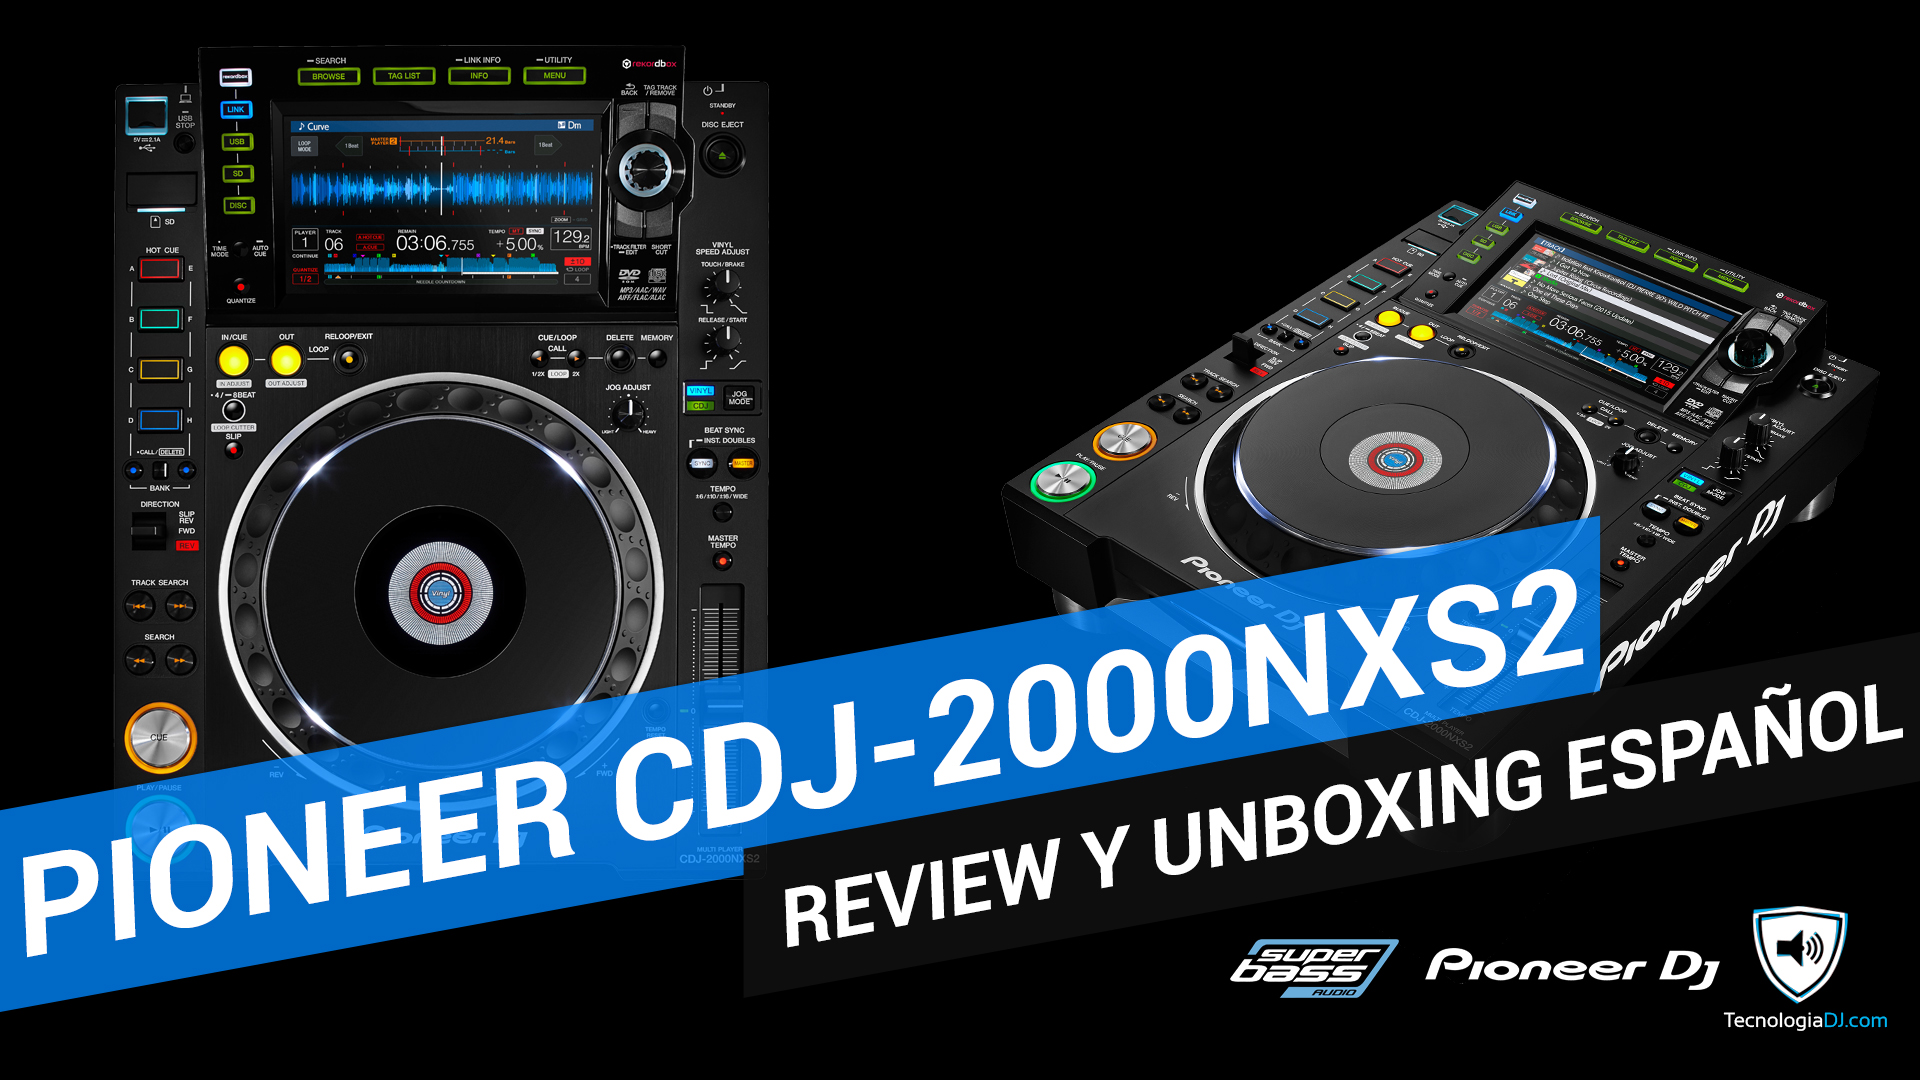 Review y unboxing en español Pioneer CDJ-2000NXS2